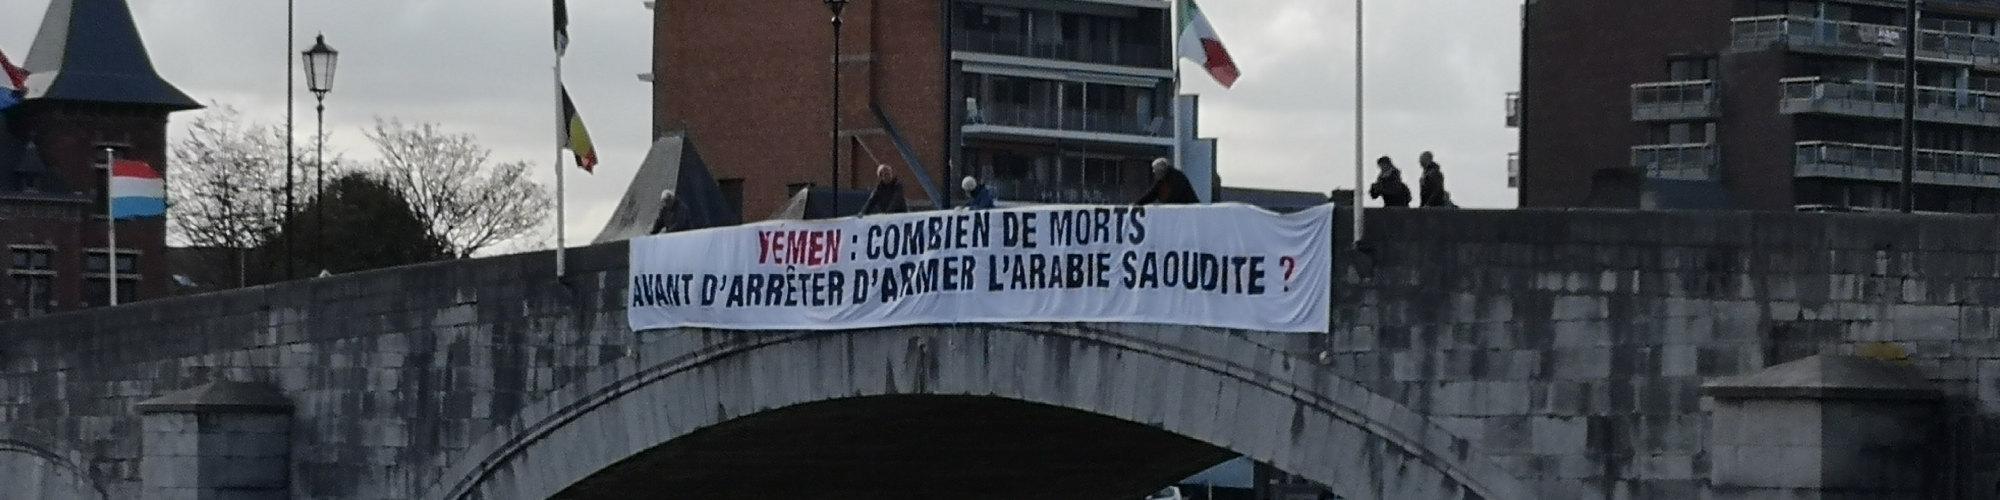 banner aan de brug in Namen